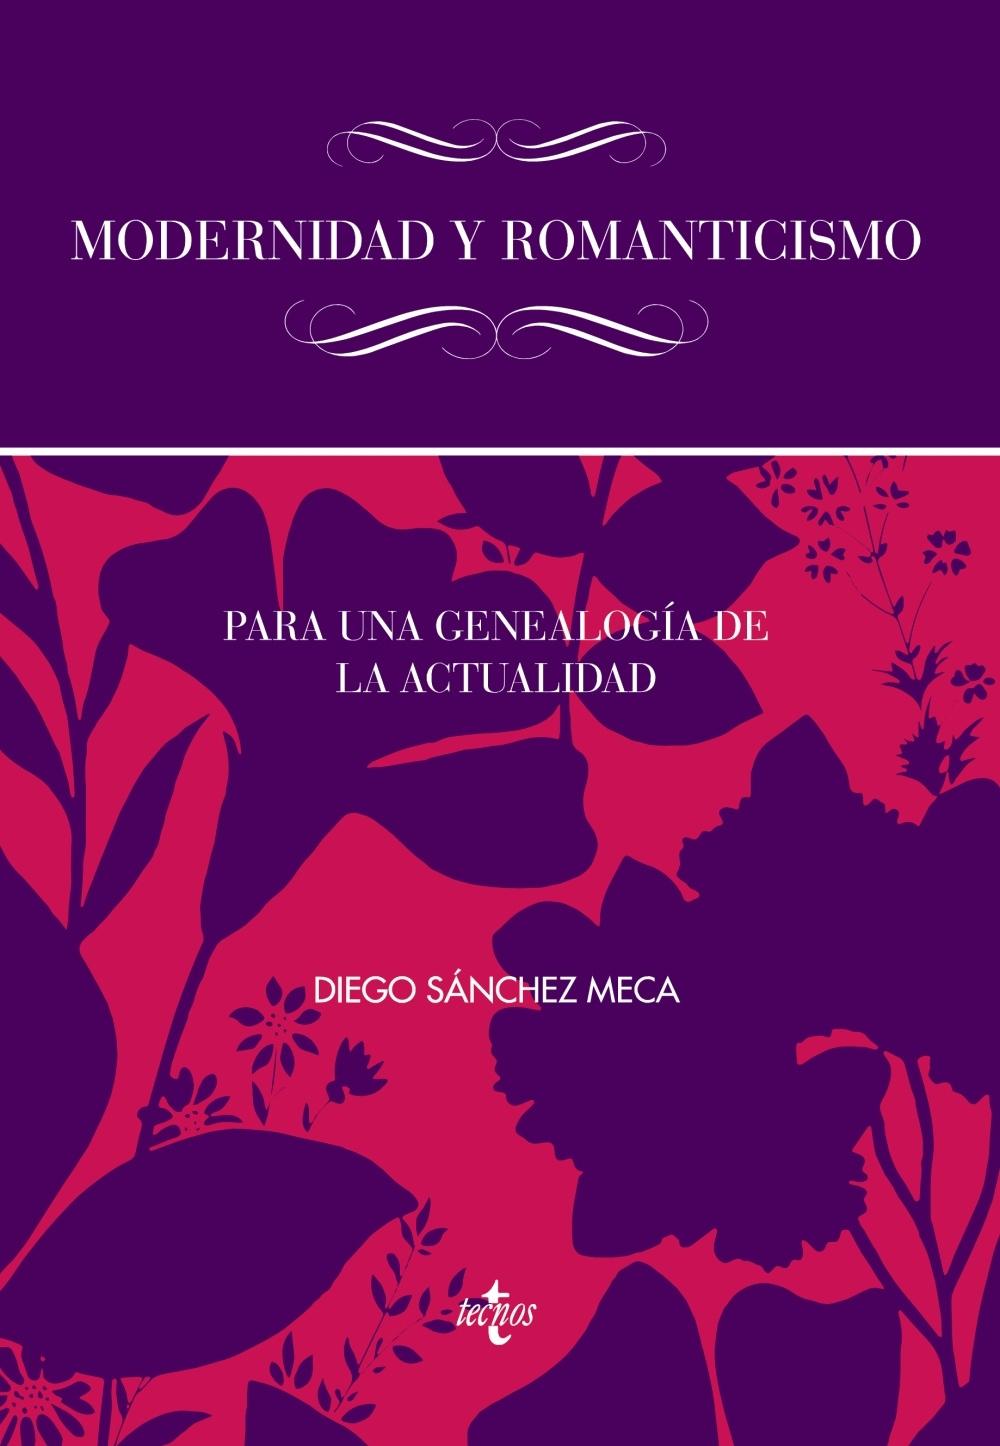 Modernidad y romanticismo "Para una genealogía de la actualidad". 